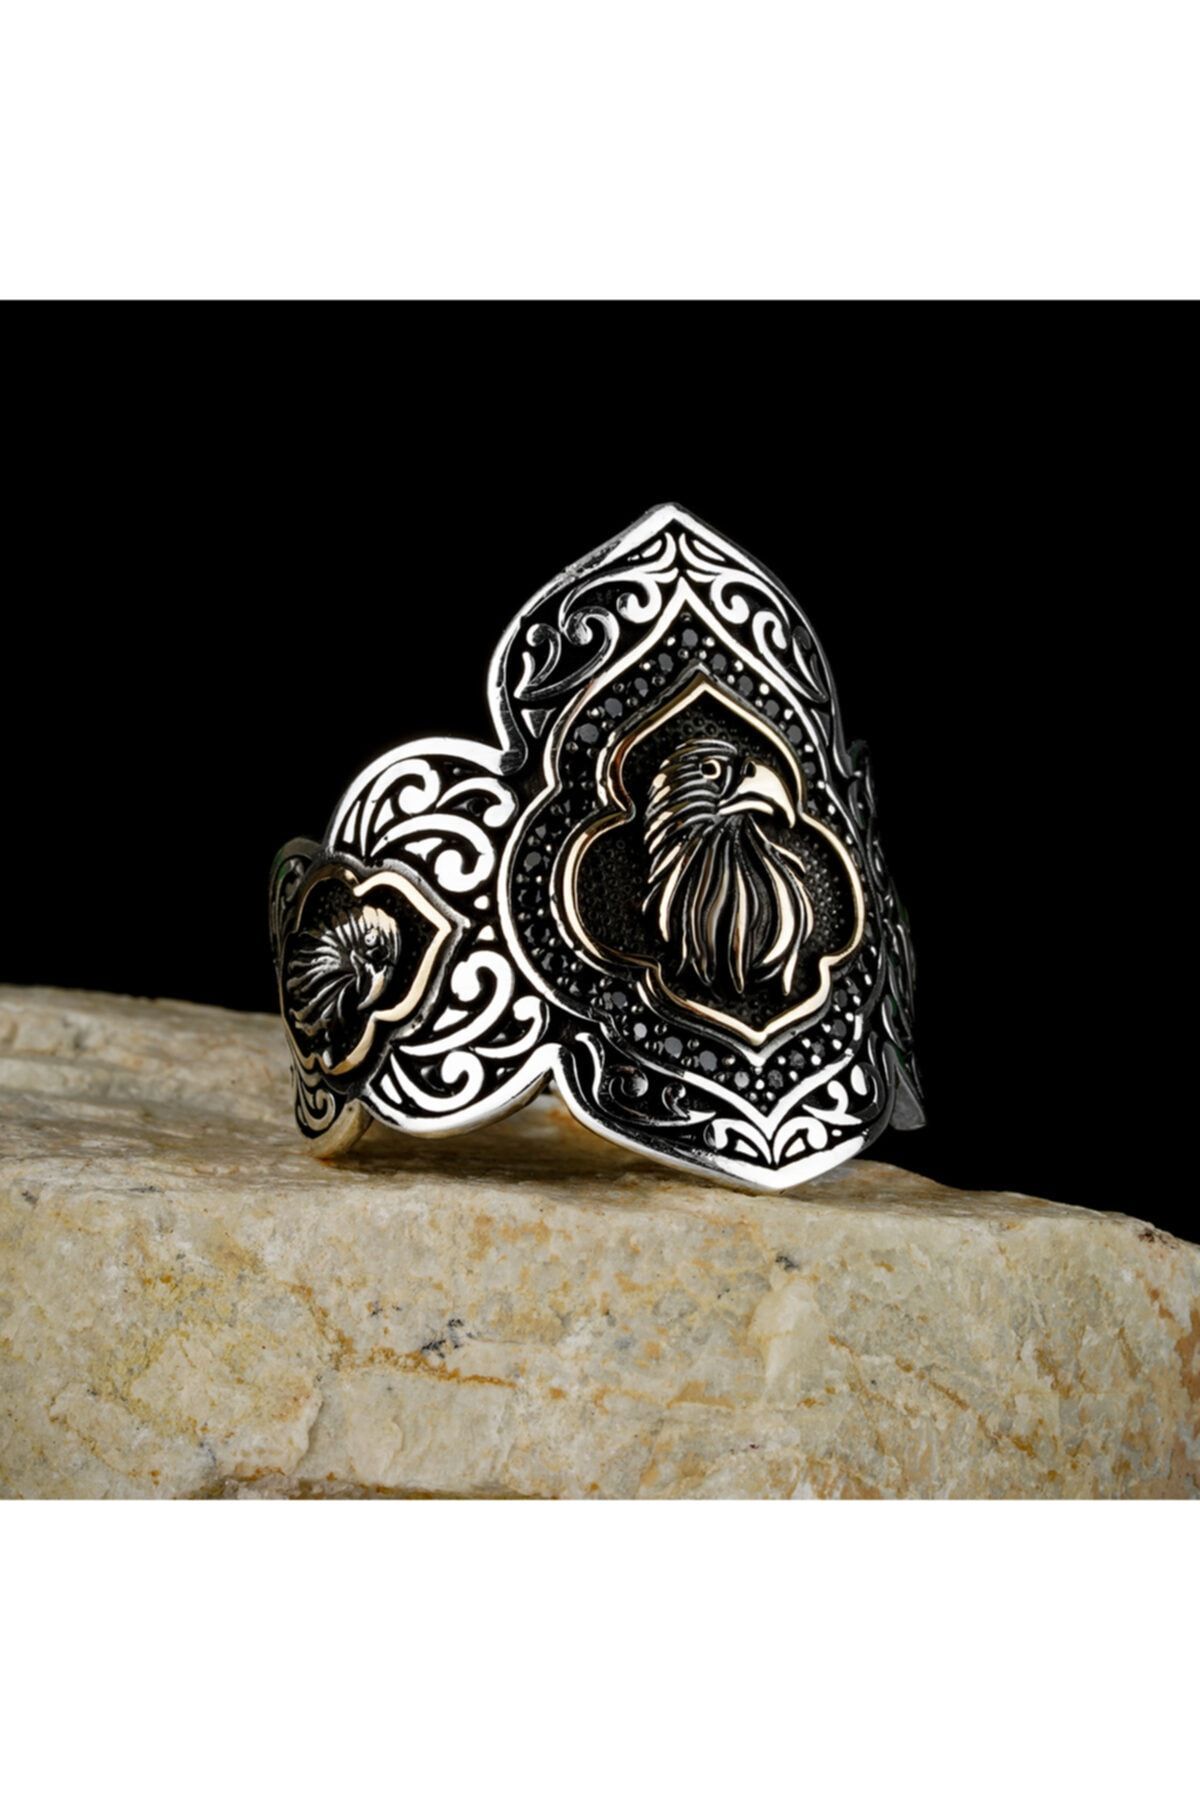 RevSilver Kartal Figürlü Okçu Yüzüğü Baş Parmak Alttan Açık Yüzük 925 Ayar Gümüş Şık Tasarımlı